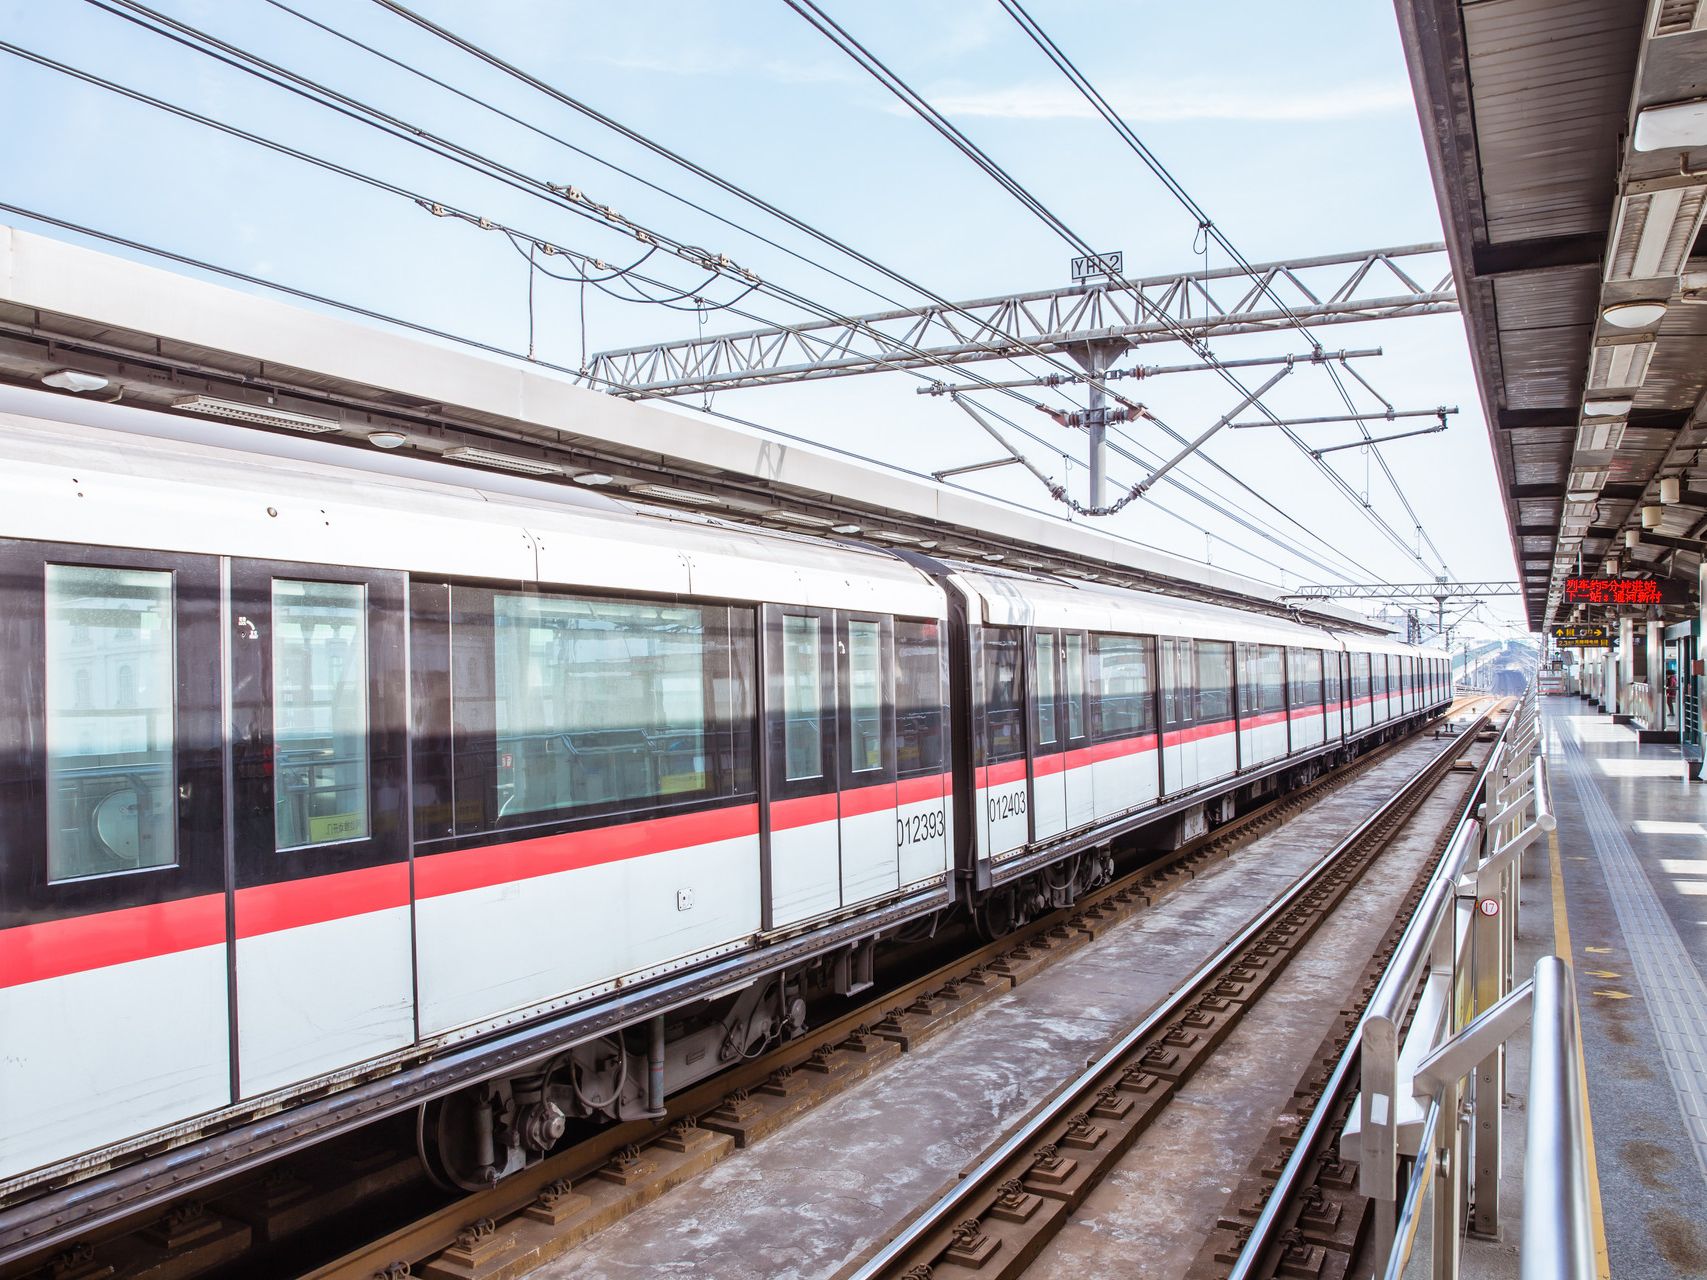 深圳宣布2020再开通7条地铁:2、3、4、6、8、10号线 - 乐有家